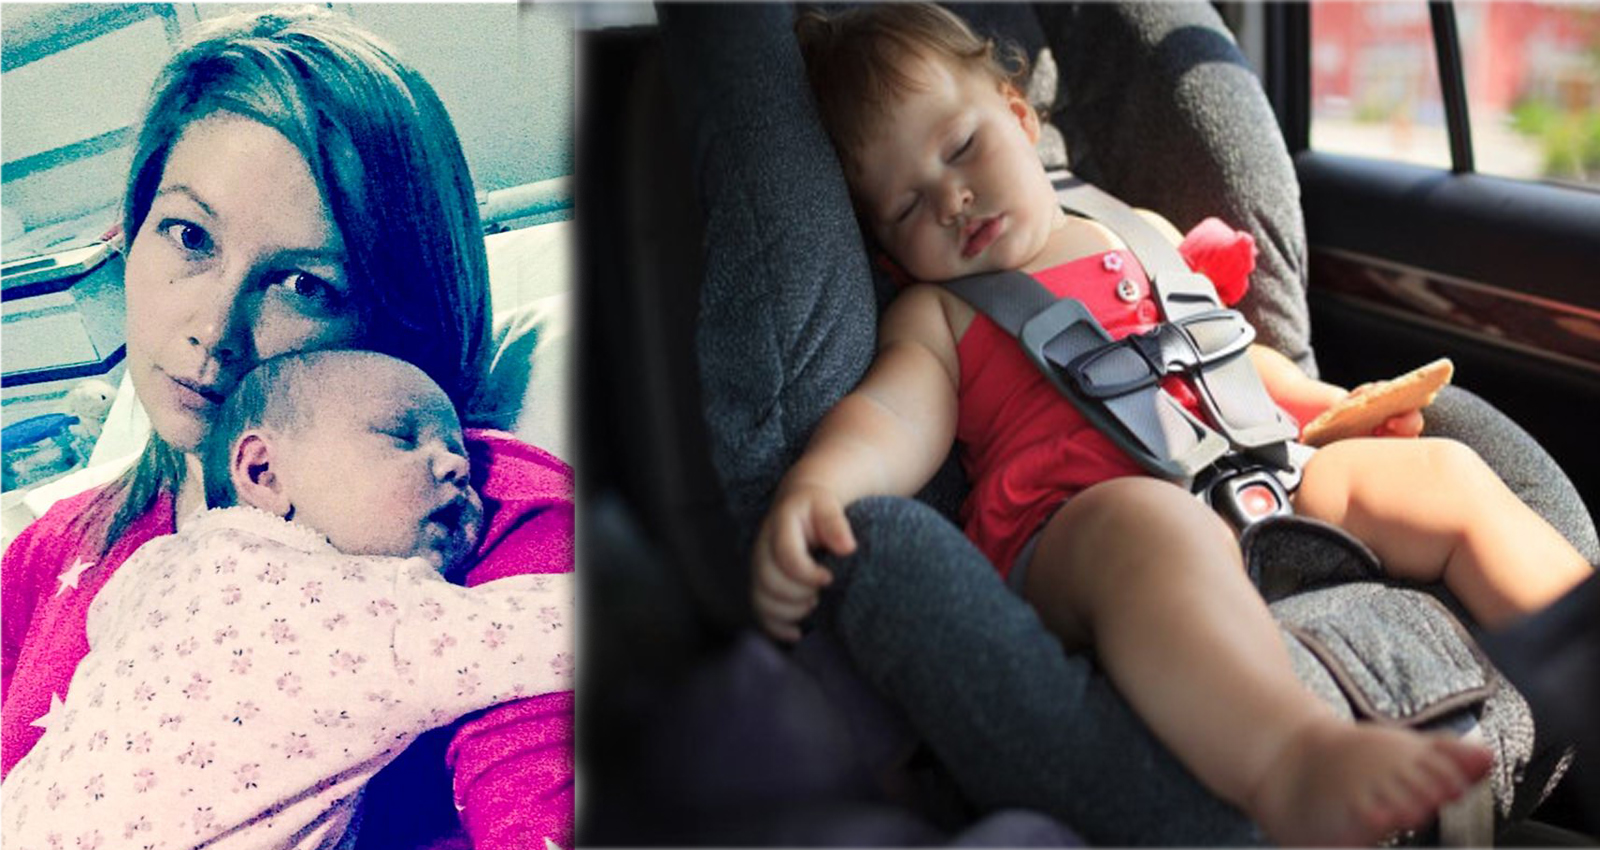 Kristi Clark (ảnh bên trái) đã cảnh báo các bậc cha mẹ nên đặc biệt lưu ý khi cho con nằm trên ô tô, nhất là với các bé dưới 3 tháng tuổi